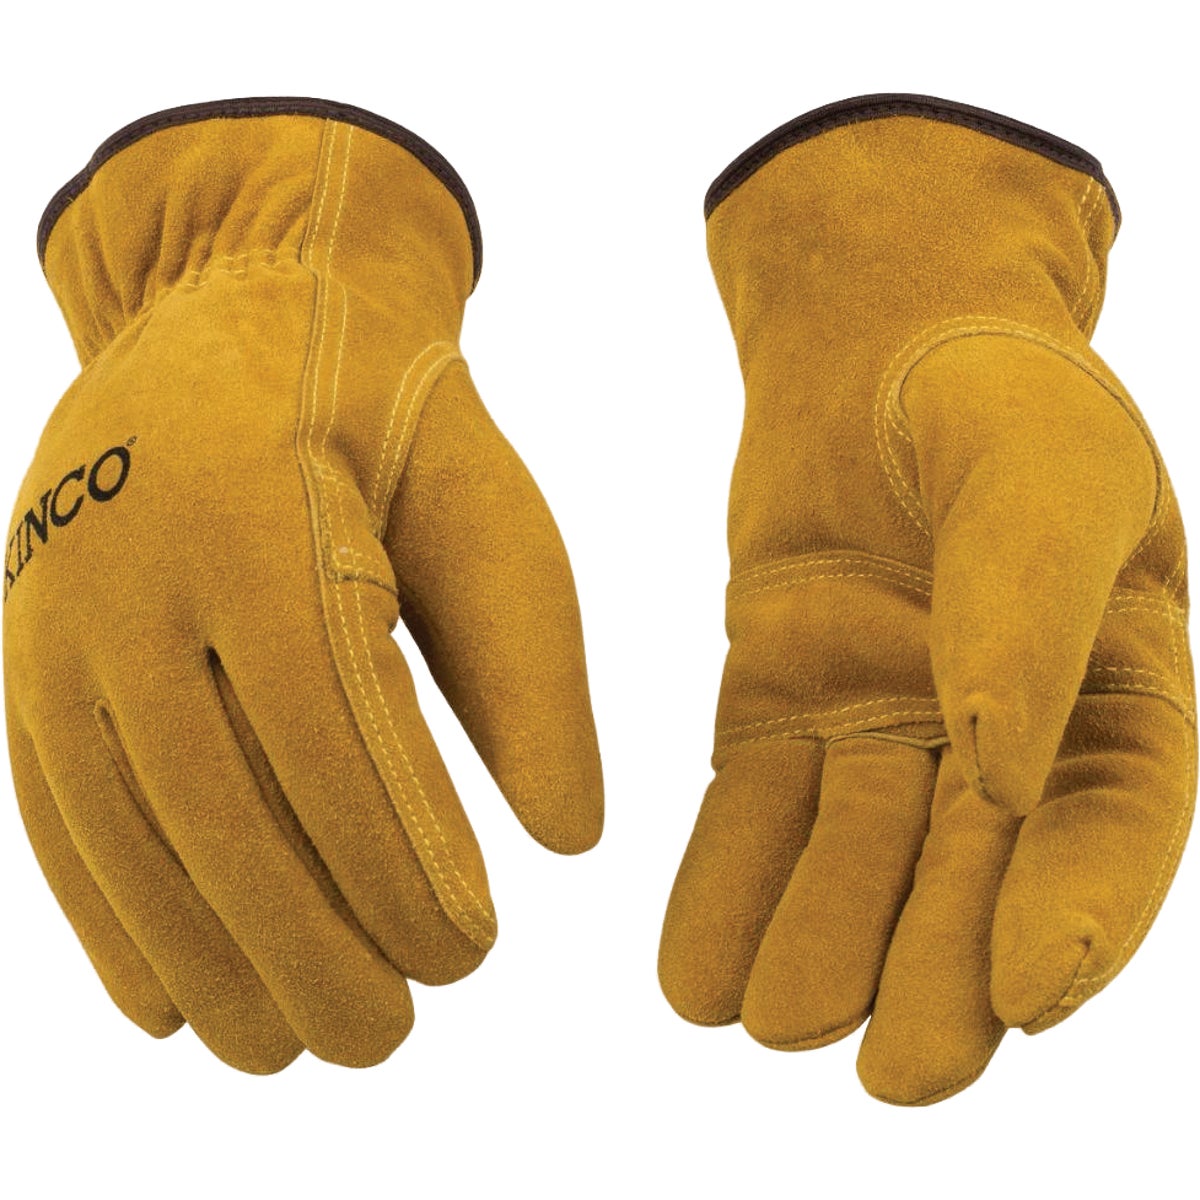 Kinco Men's XL Suede Cowhide Winter Work Glove